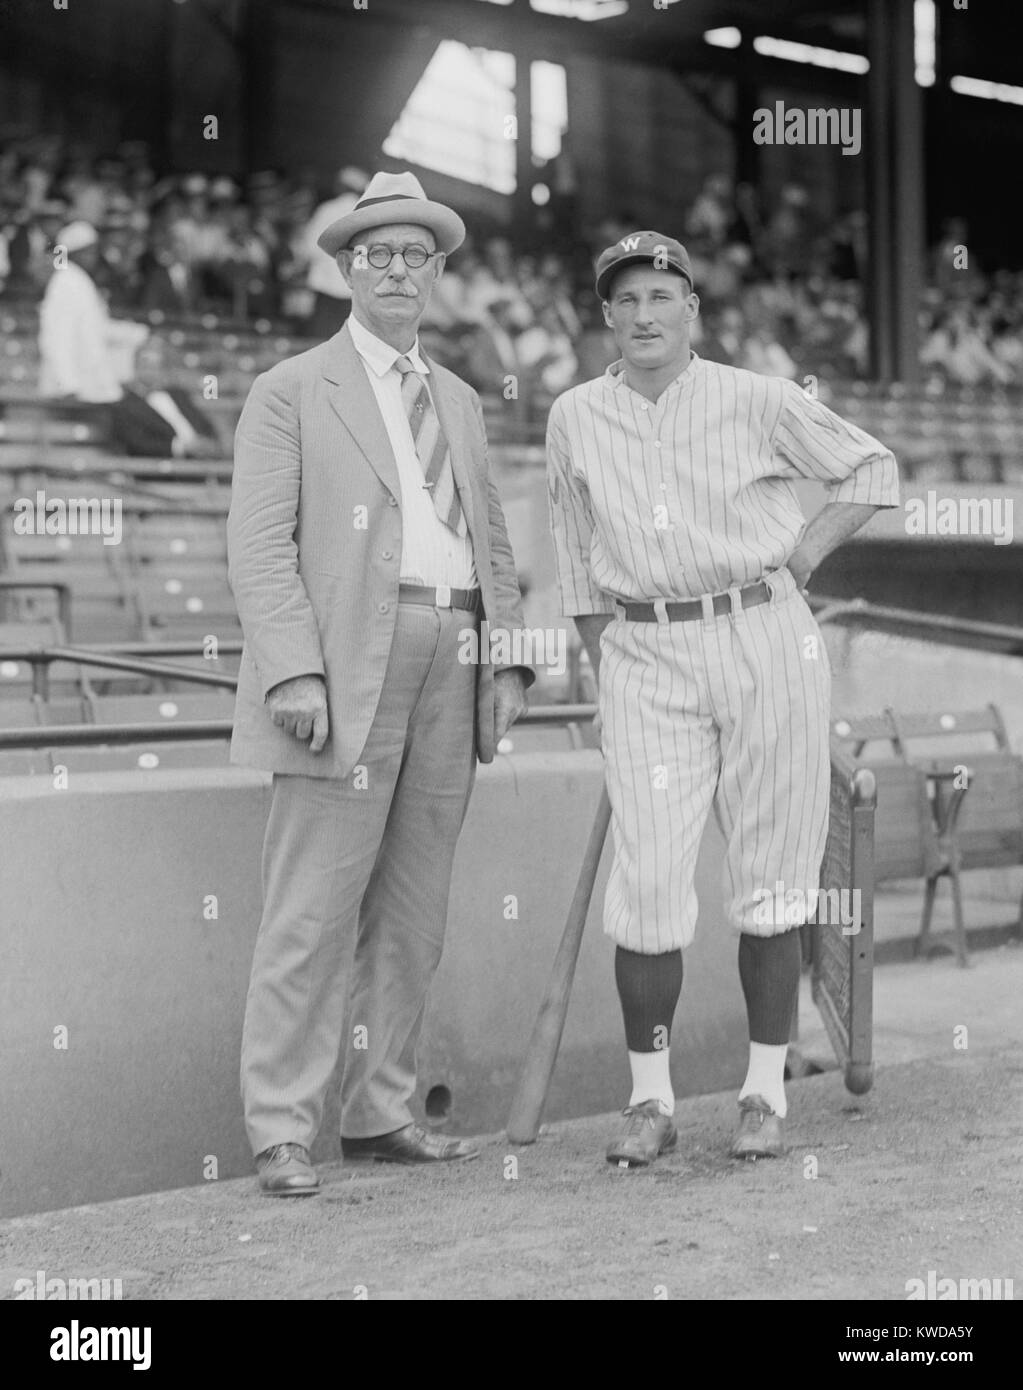 Roger Connor & Goose Goslin bei einem Major League Baseball Spiel in Washington, D.C., Sept. 8, 1925. Connor spielte in den grossen Ligen von 1880 bis 1897, und hielt die Karriere homerun Datensatz von 138 bis er von Babe Ruth gebrochen war. (BSLOC 2015 17 9) Stockfoto